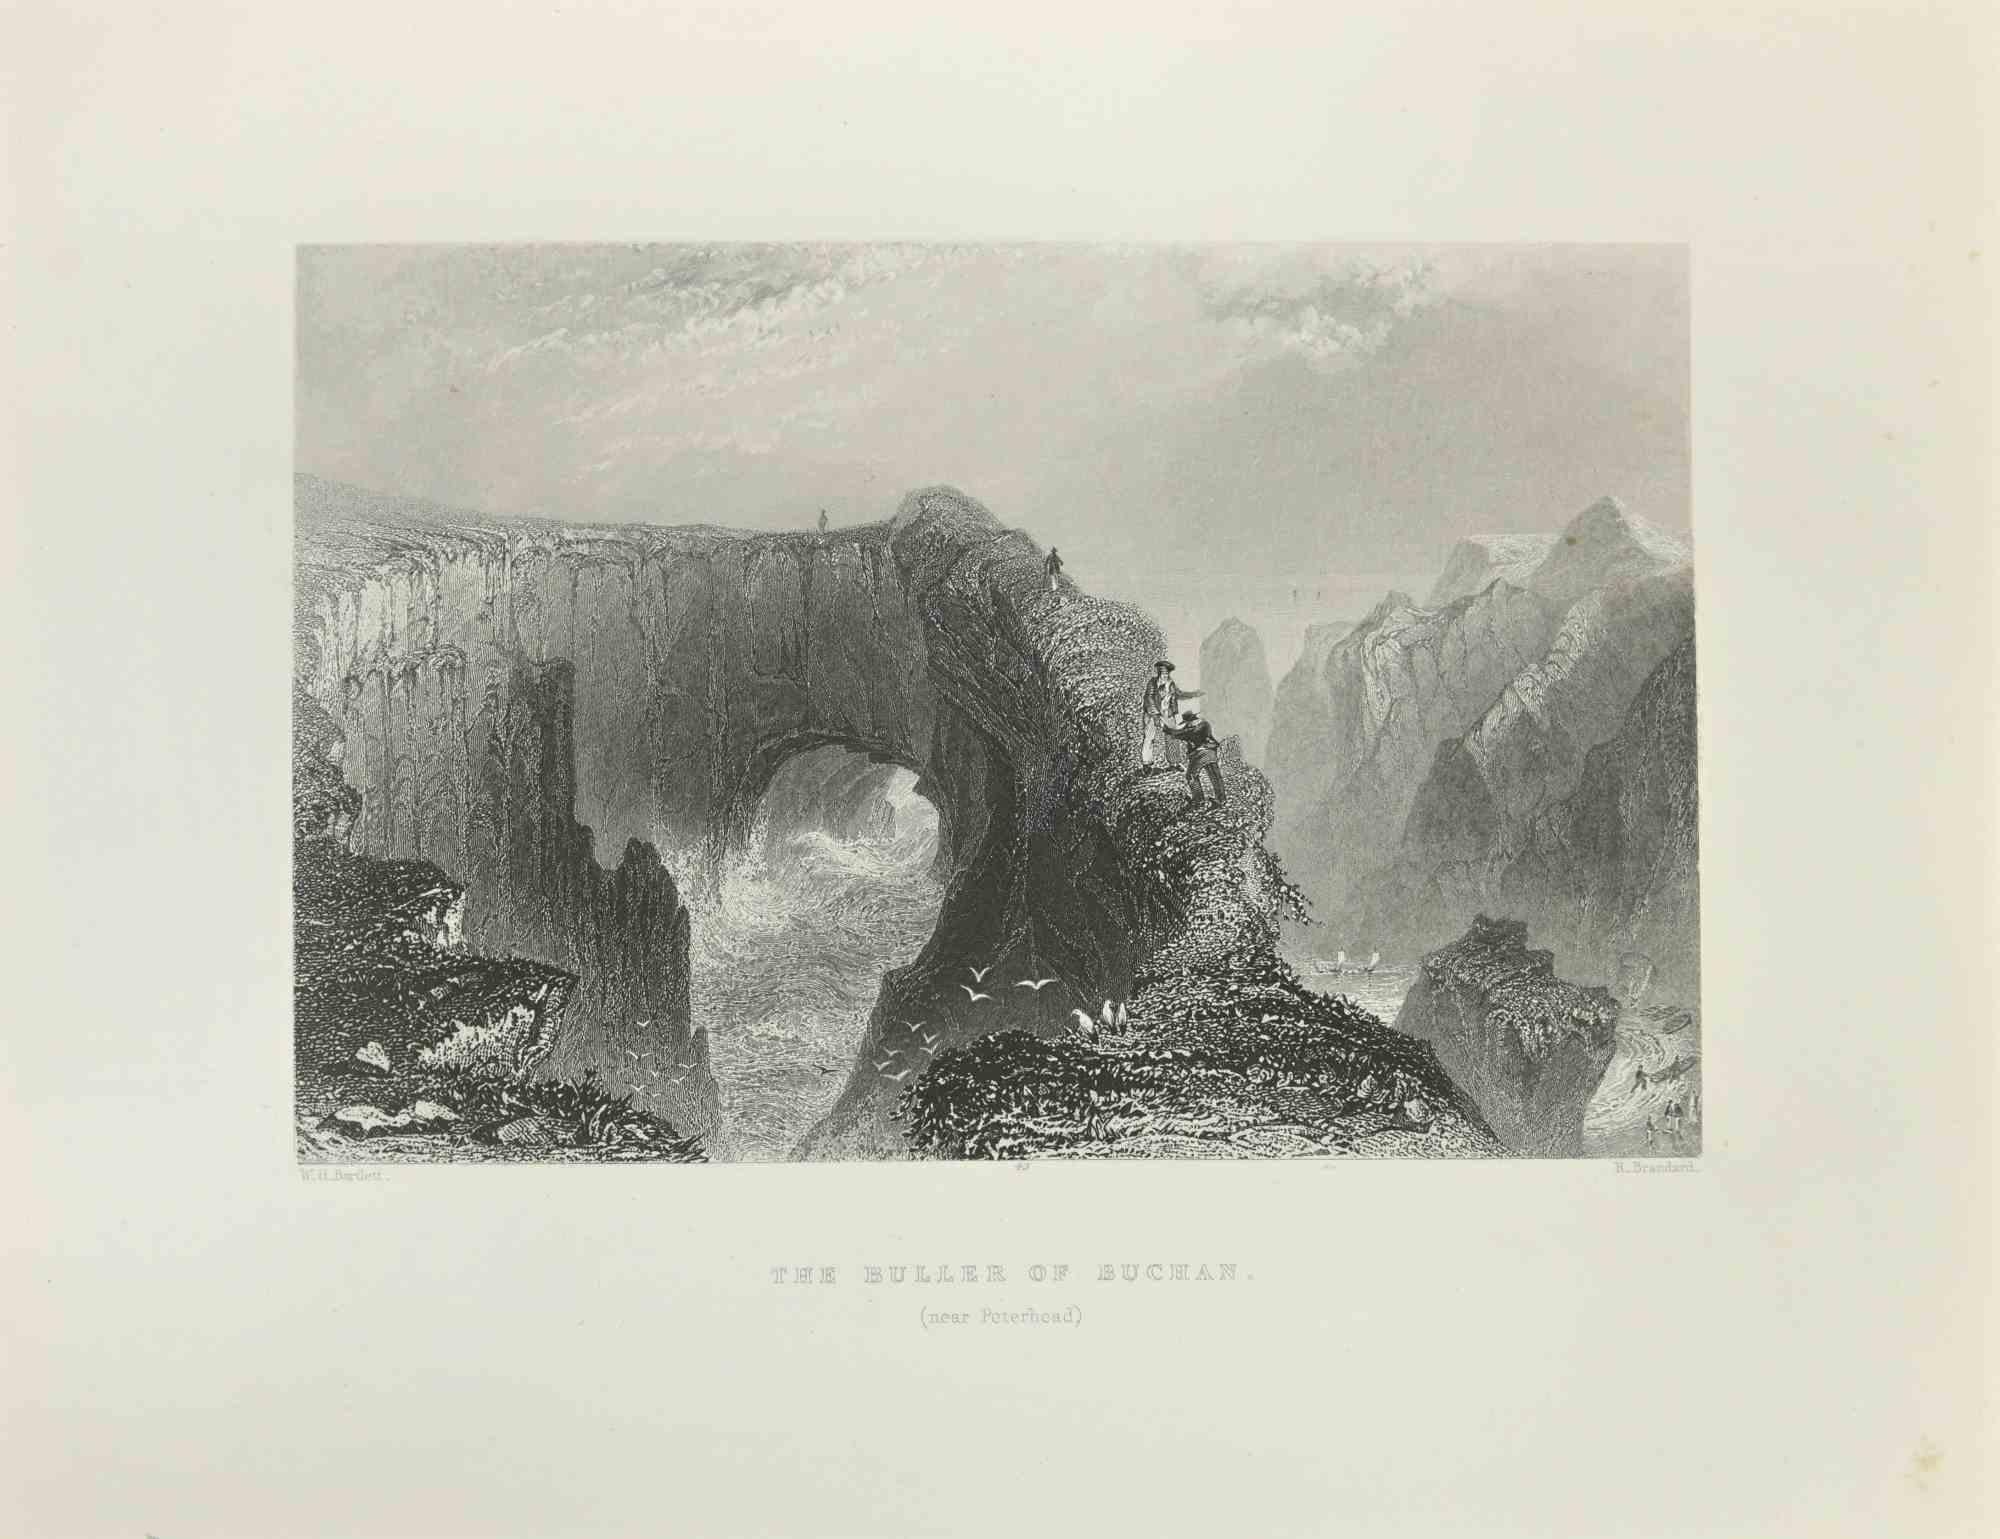 The Buller Of Buchan - Gravure de W.H. Bartlett - 1845